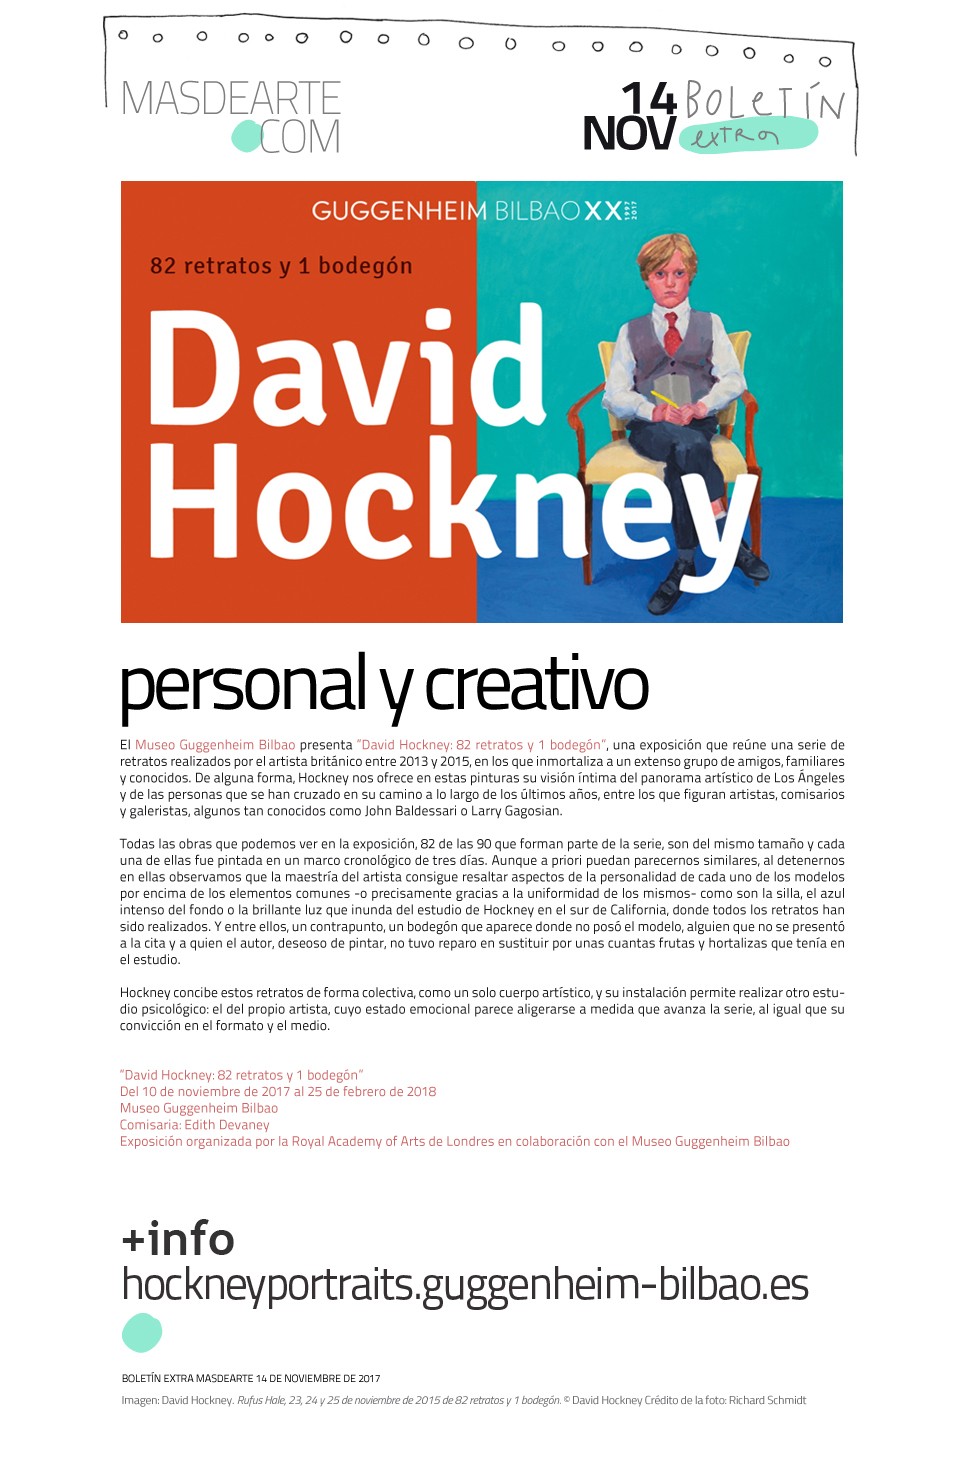 Extra masdearte: David Hockney. 82 retratos y un bodegón, en el Museo Guggenheim Bilbao. Hasta el 25 de febrero de 2018